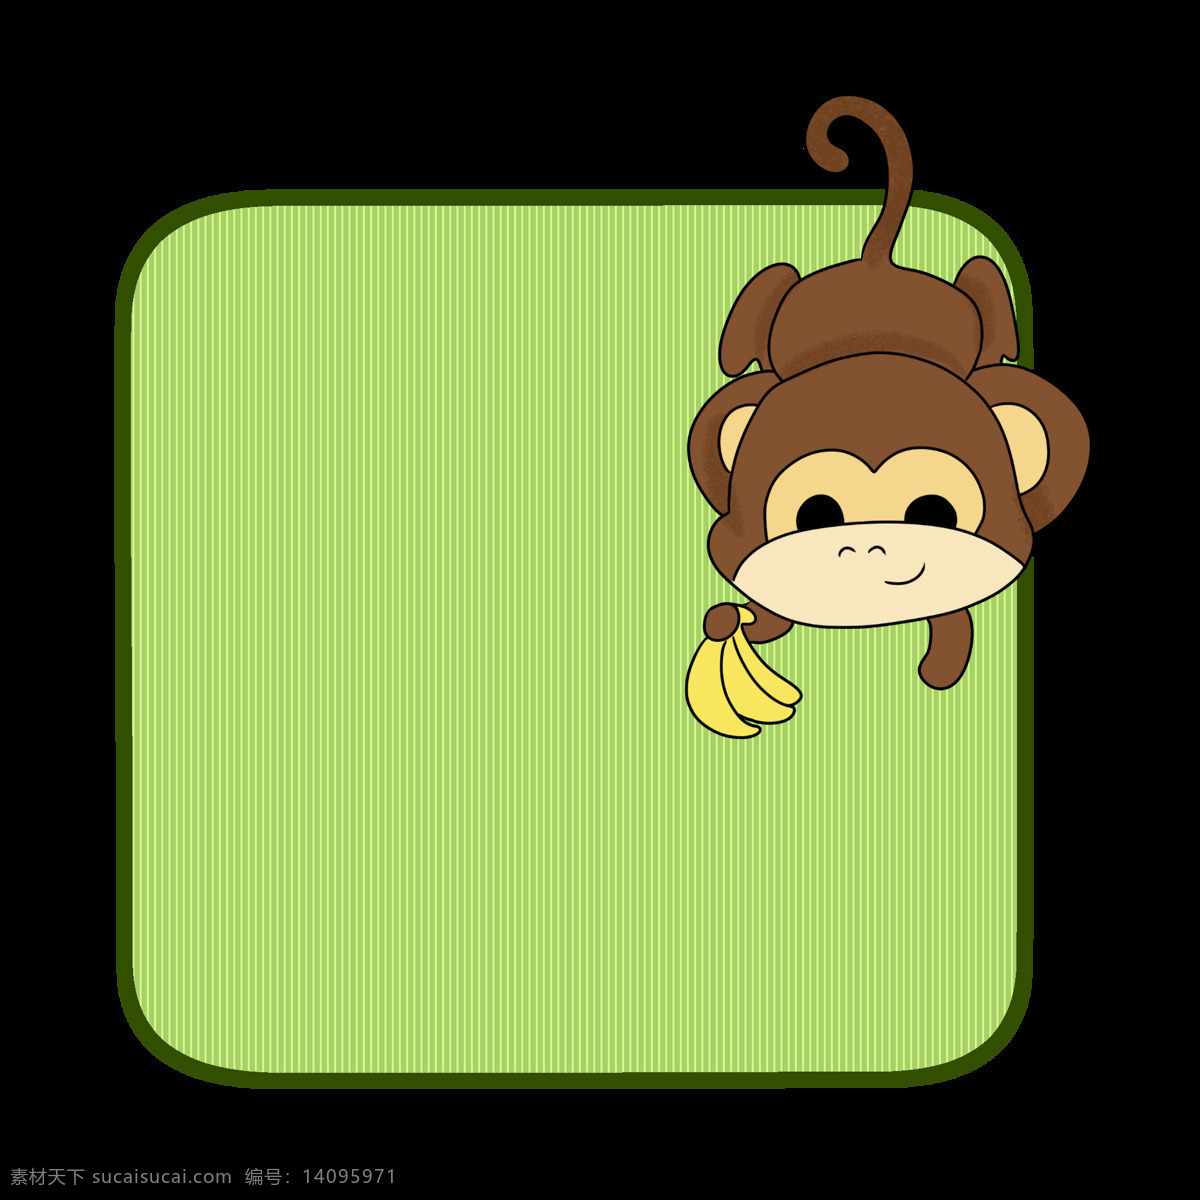 可爱 猴子 边框 插画 黄色的香蕉 漂亮 手绘猴子边框 唯美猴子边框 猴子边框插画